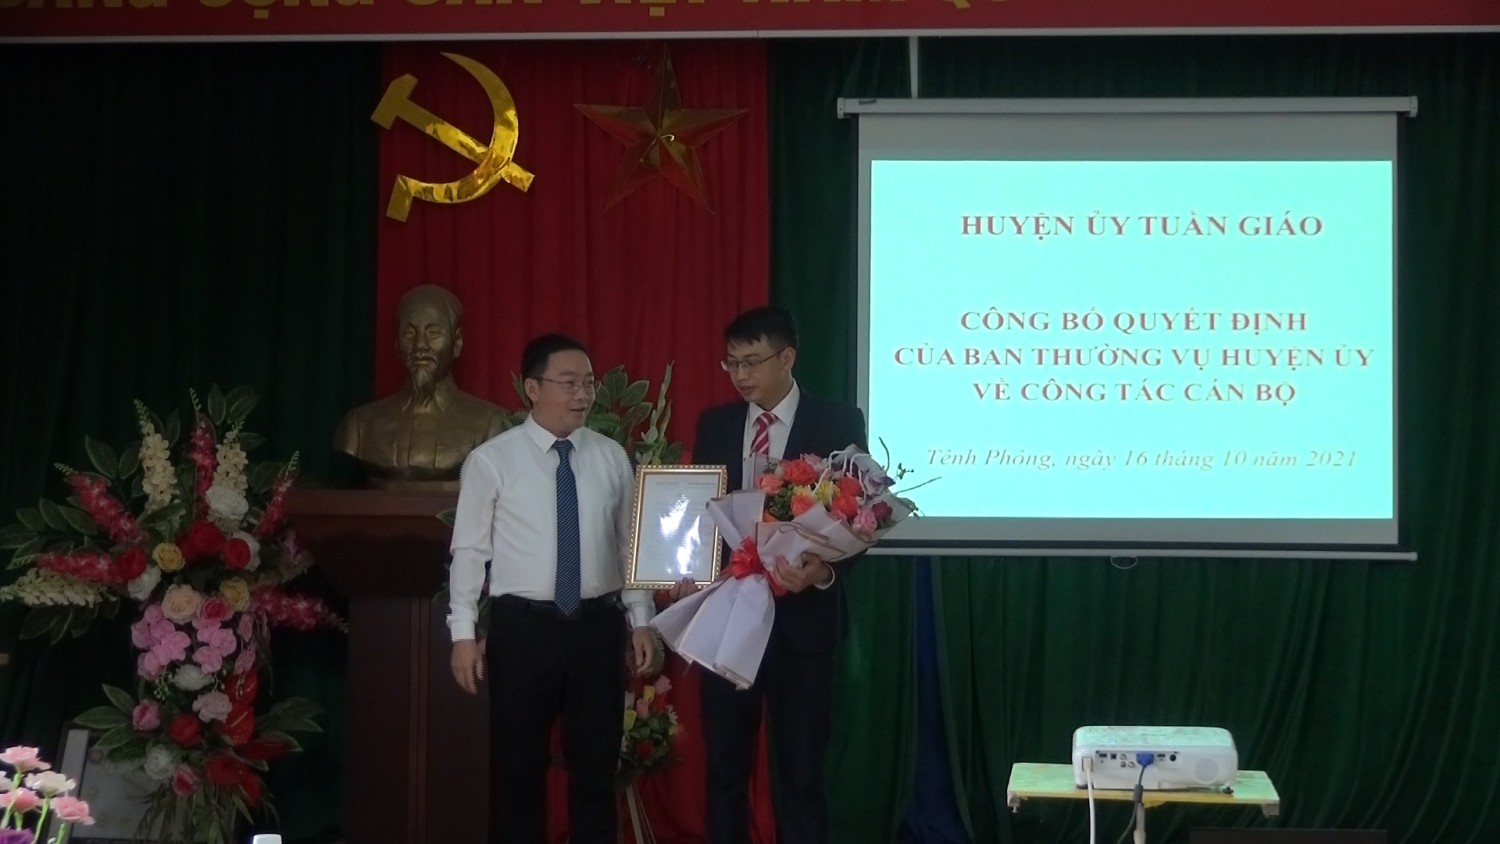 Huyện ủy Tuần Giáo đã tổ chức công bố Quyết định luân chuyển, chỉ định chức danh Bí thư Đảng ủy xã Tênh Phông